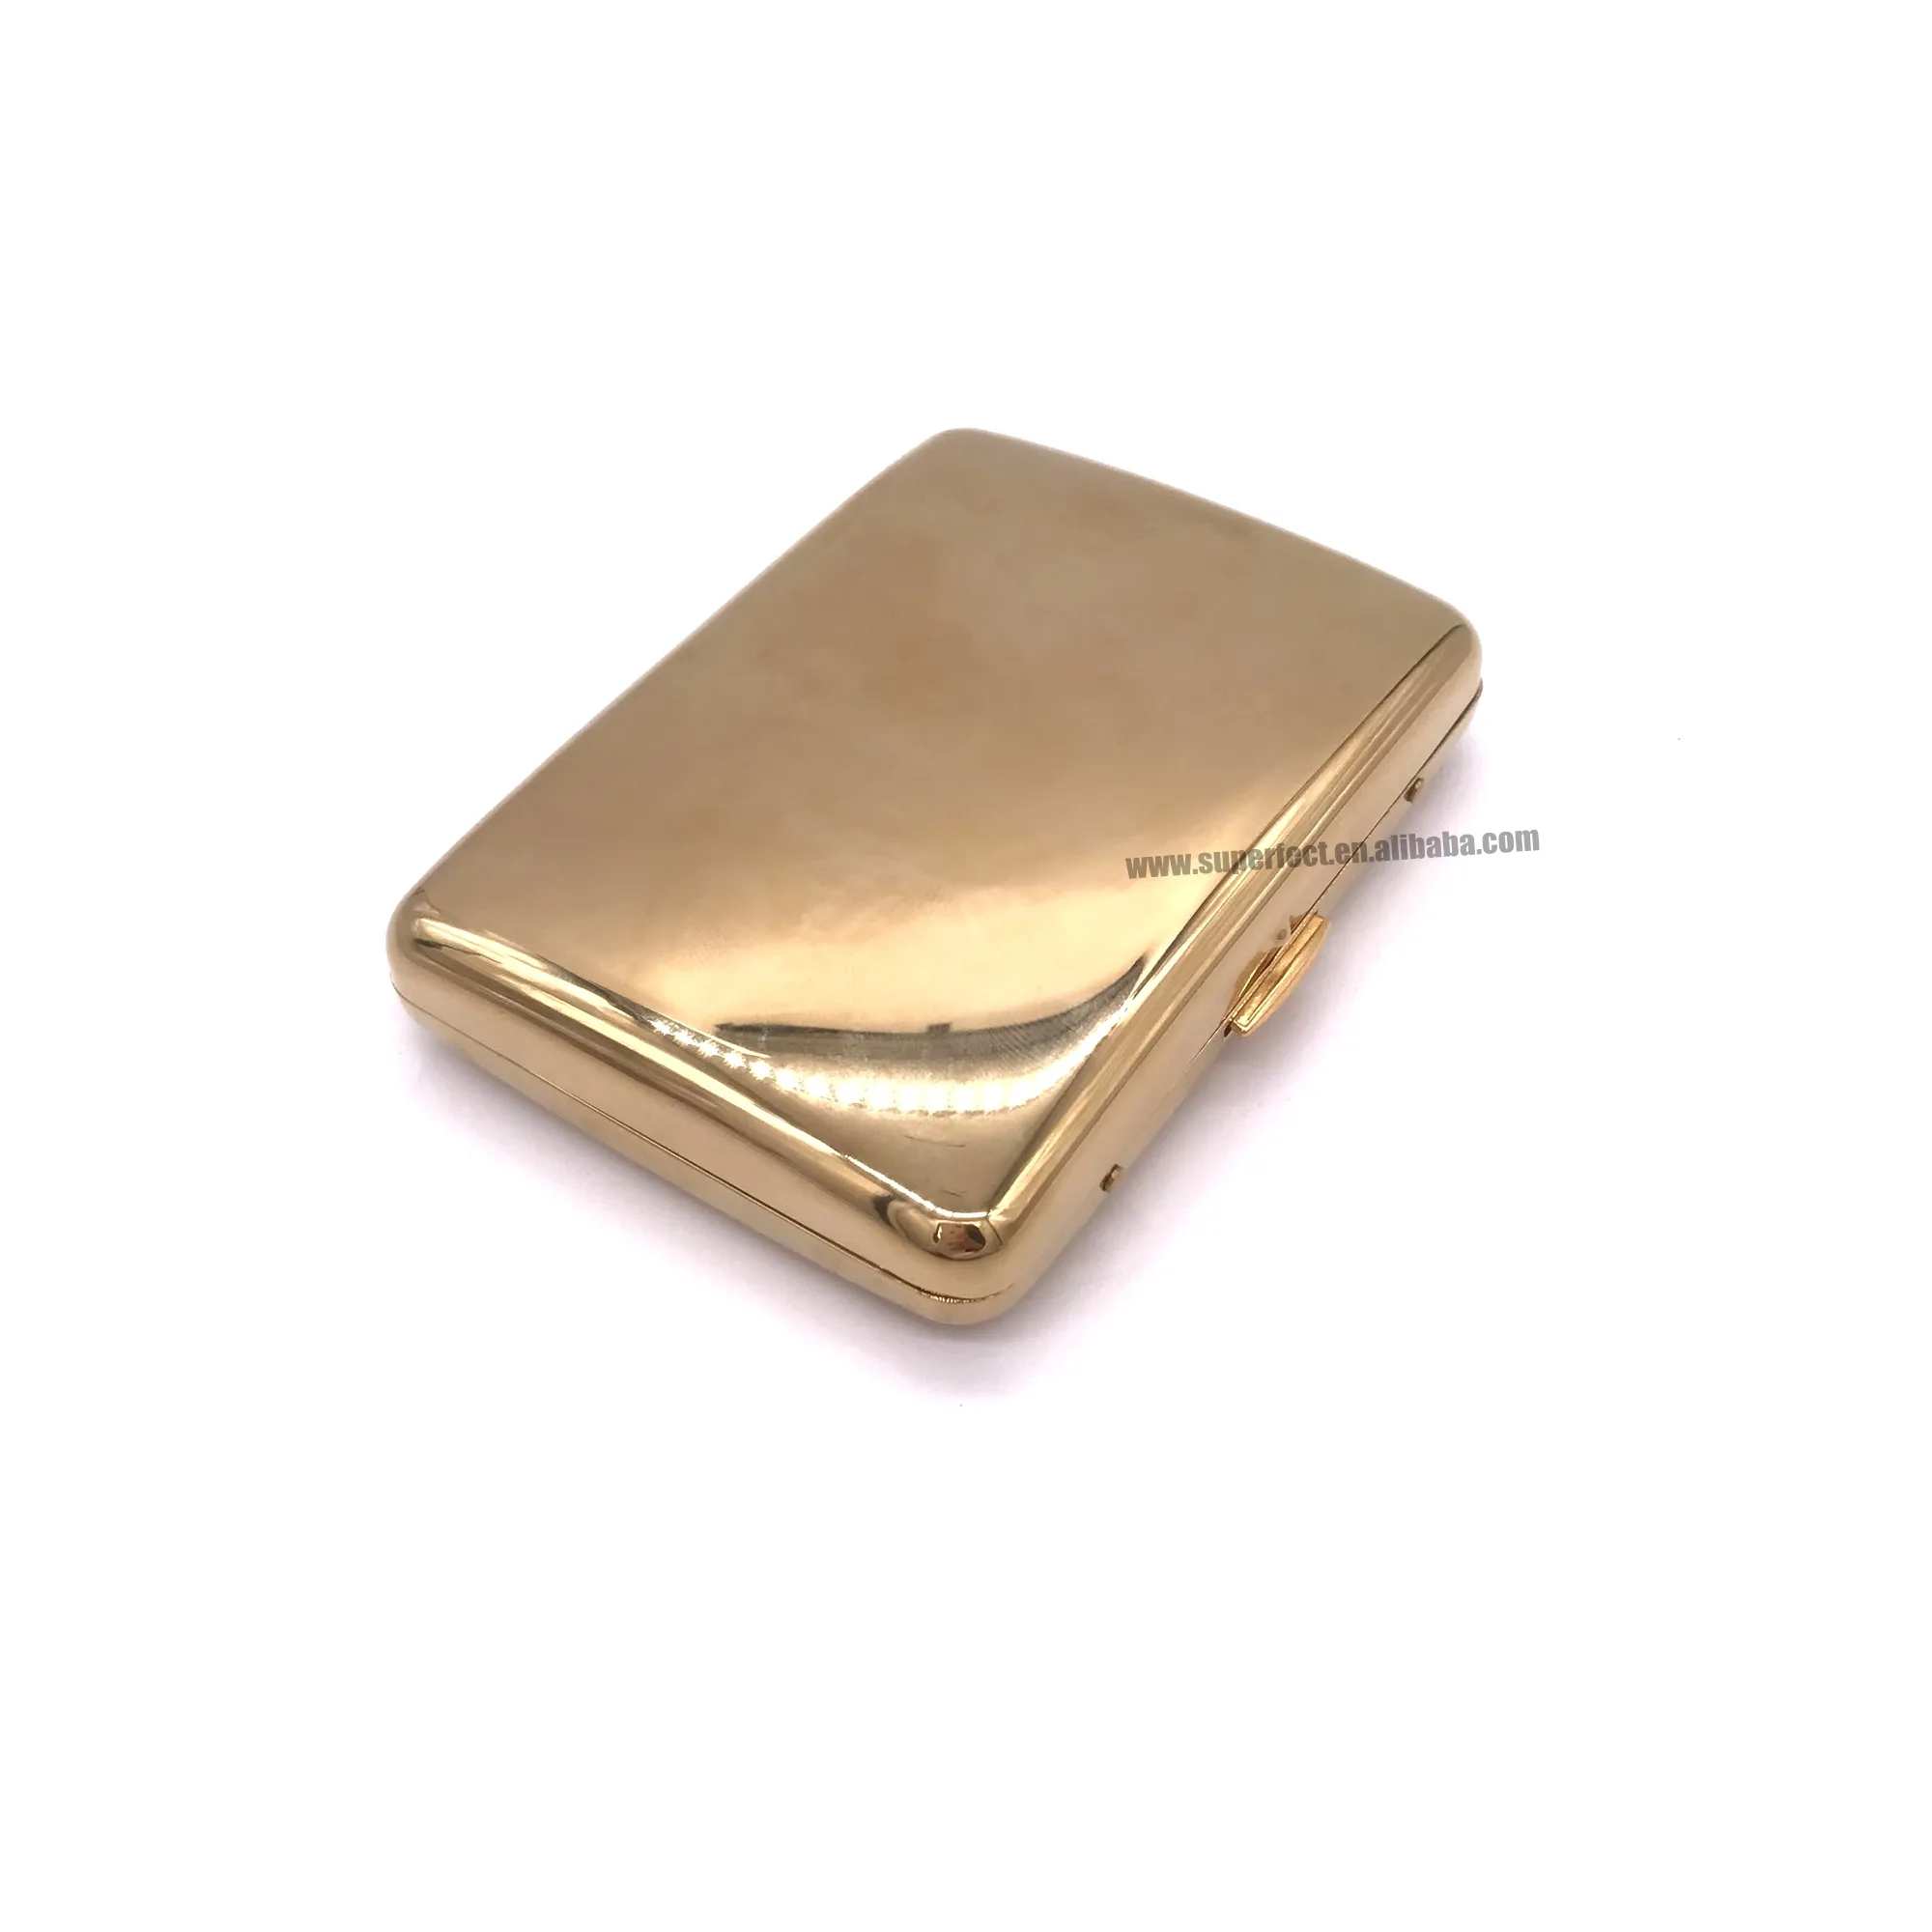 Высококачественный зеркальный металлический портсигар из нержавеющей стали с отполированным золотом 16 шт. на заказ